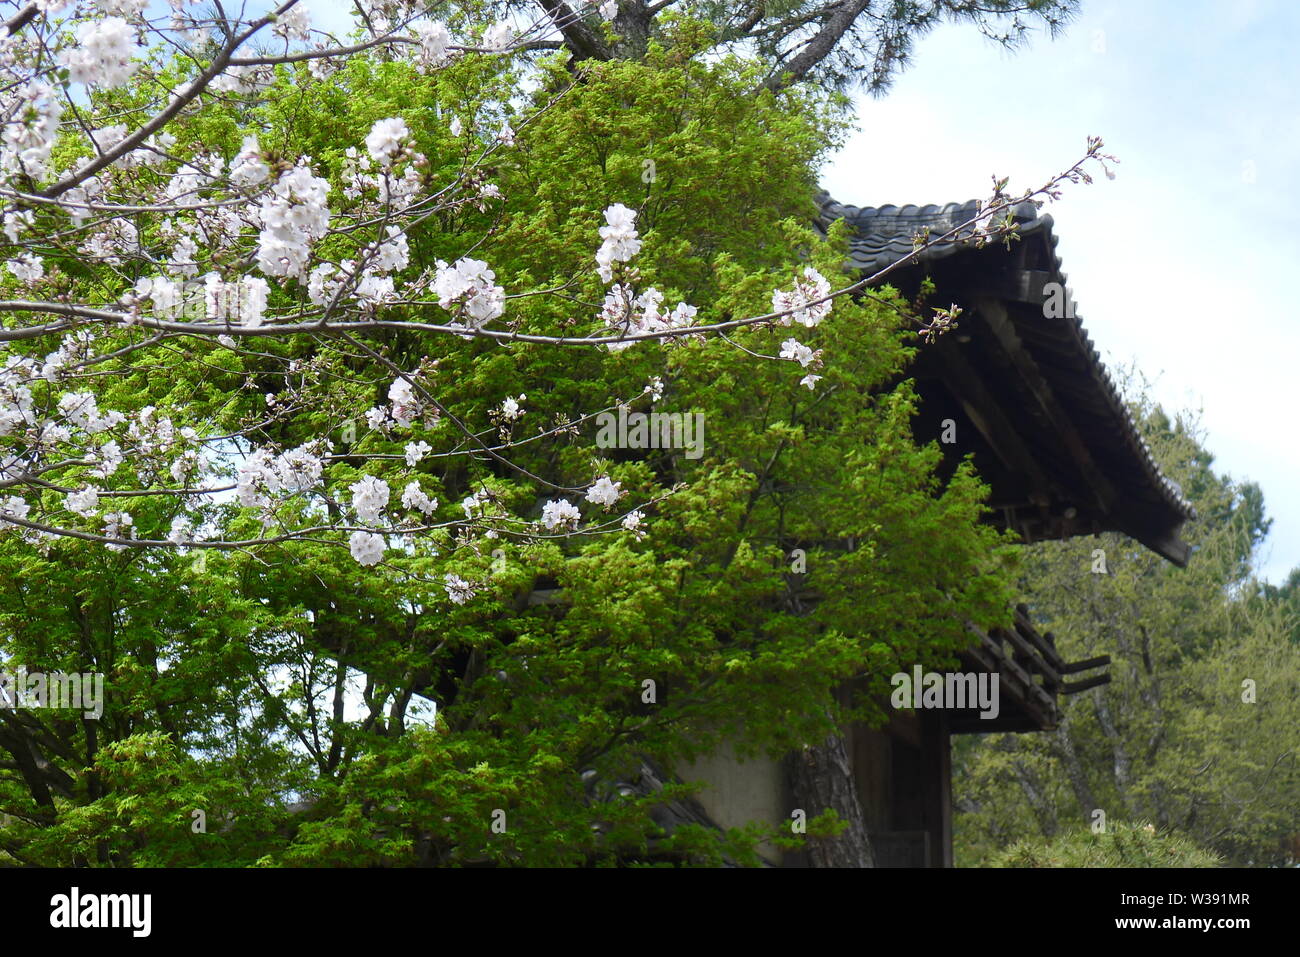 Fiore di Ciliegio albero a ingresso di Fort Worth giardino giapponese Foto Stock